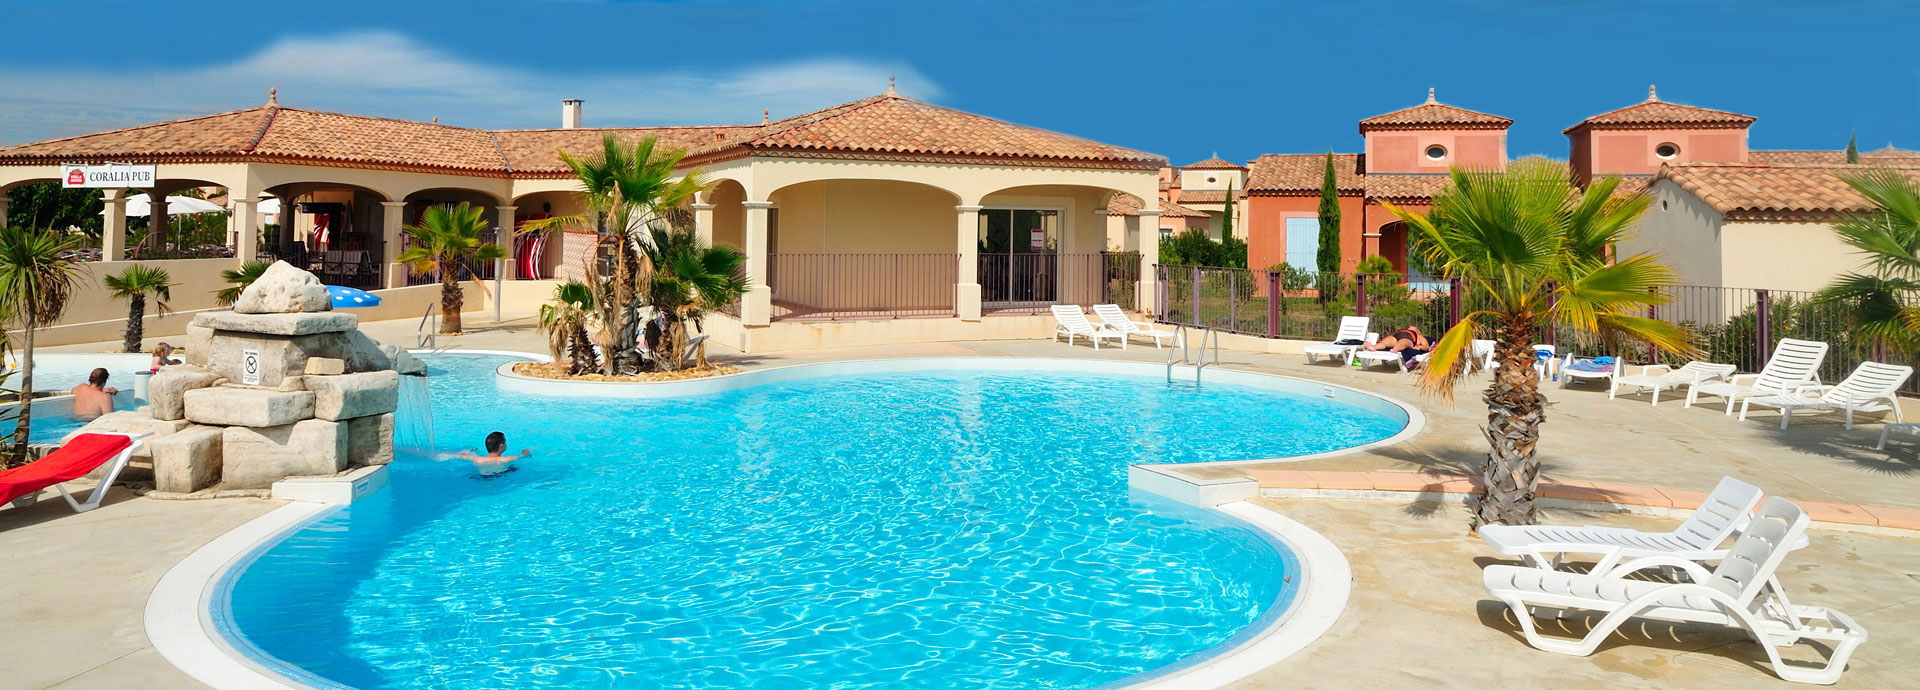 Vermietung von Ferienresidenzen mit Pool: Coralia Vacances